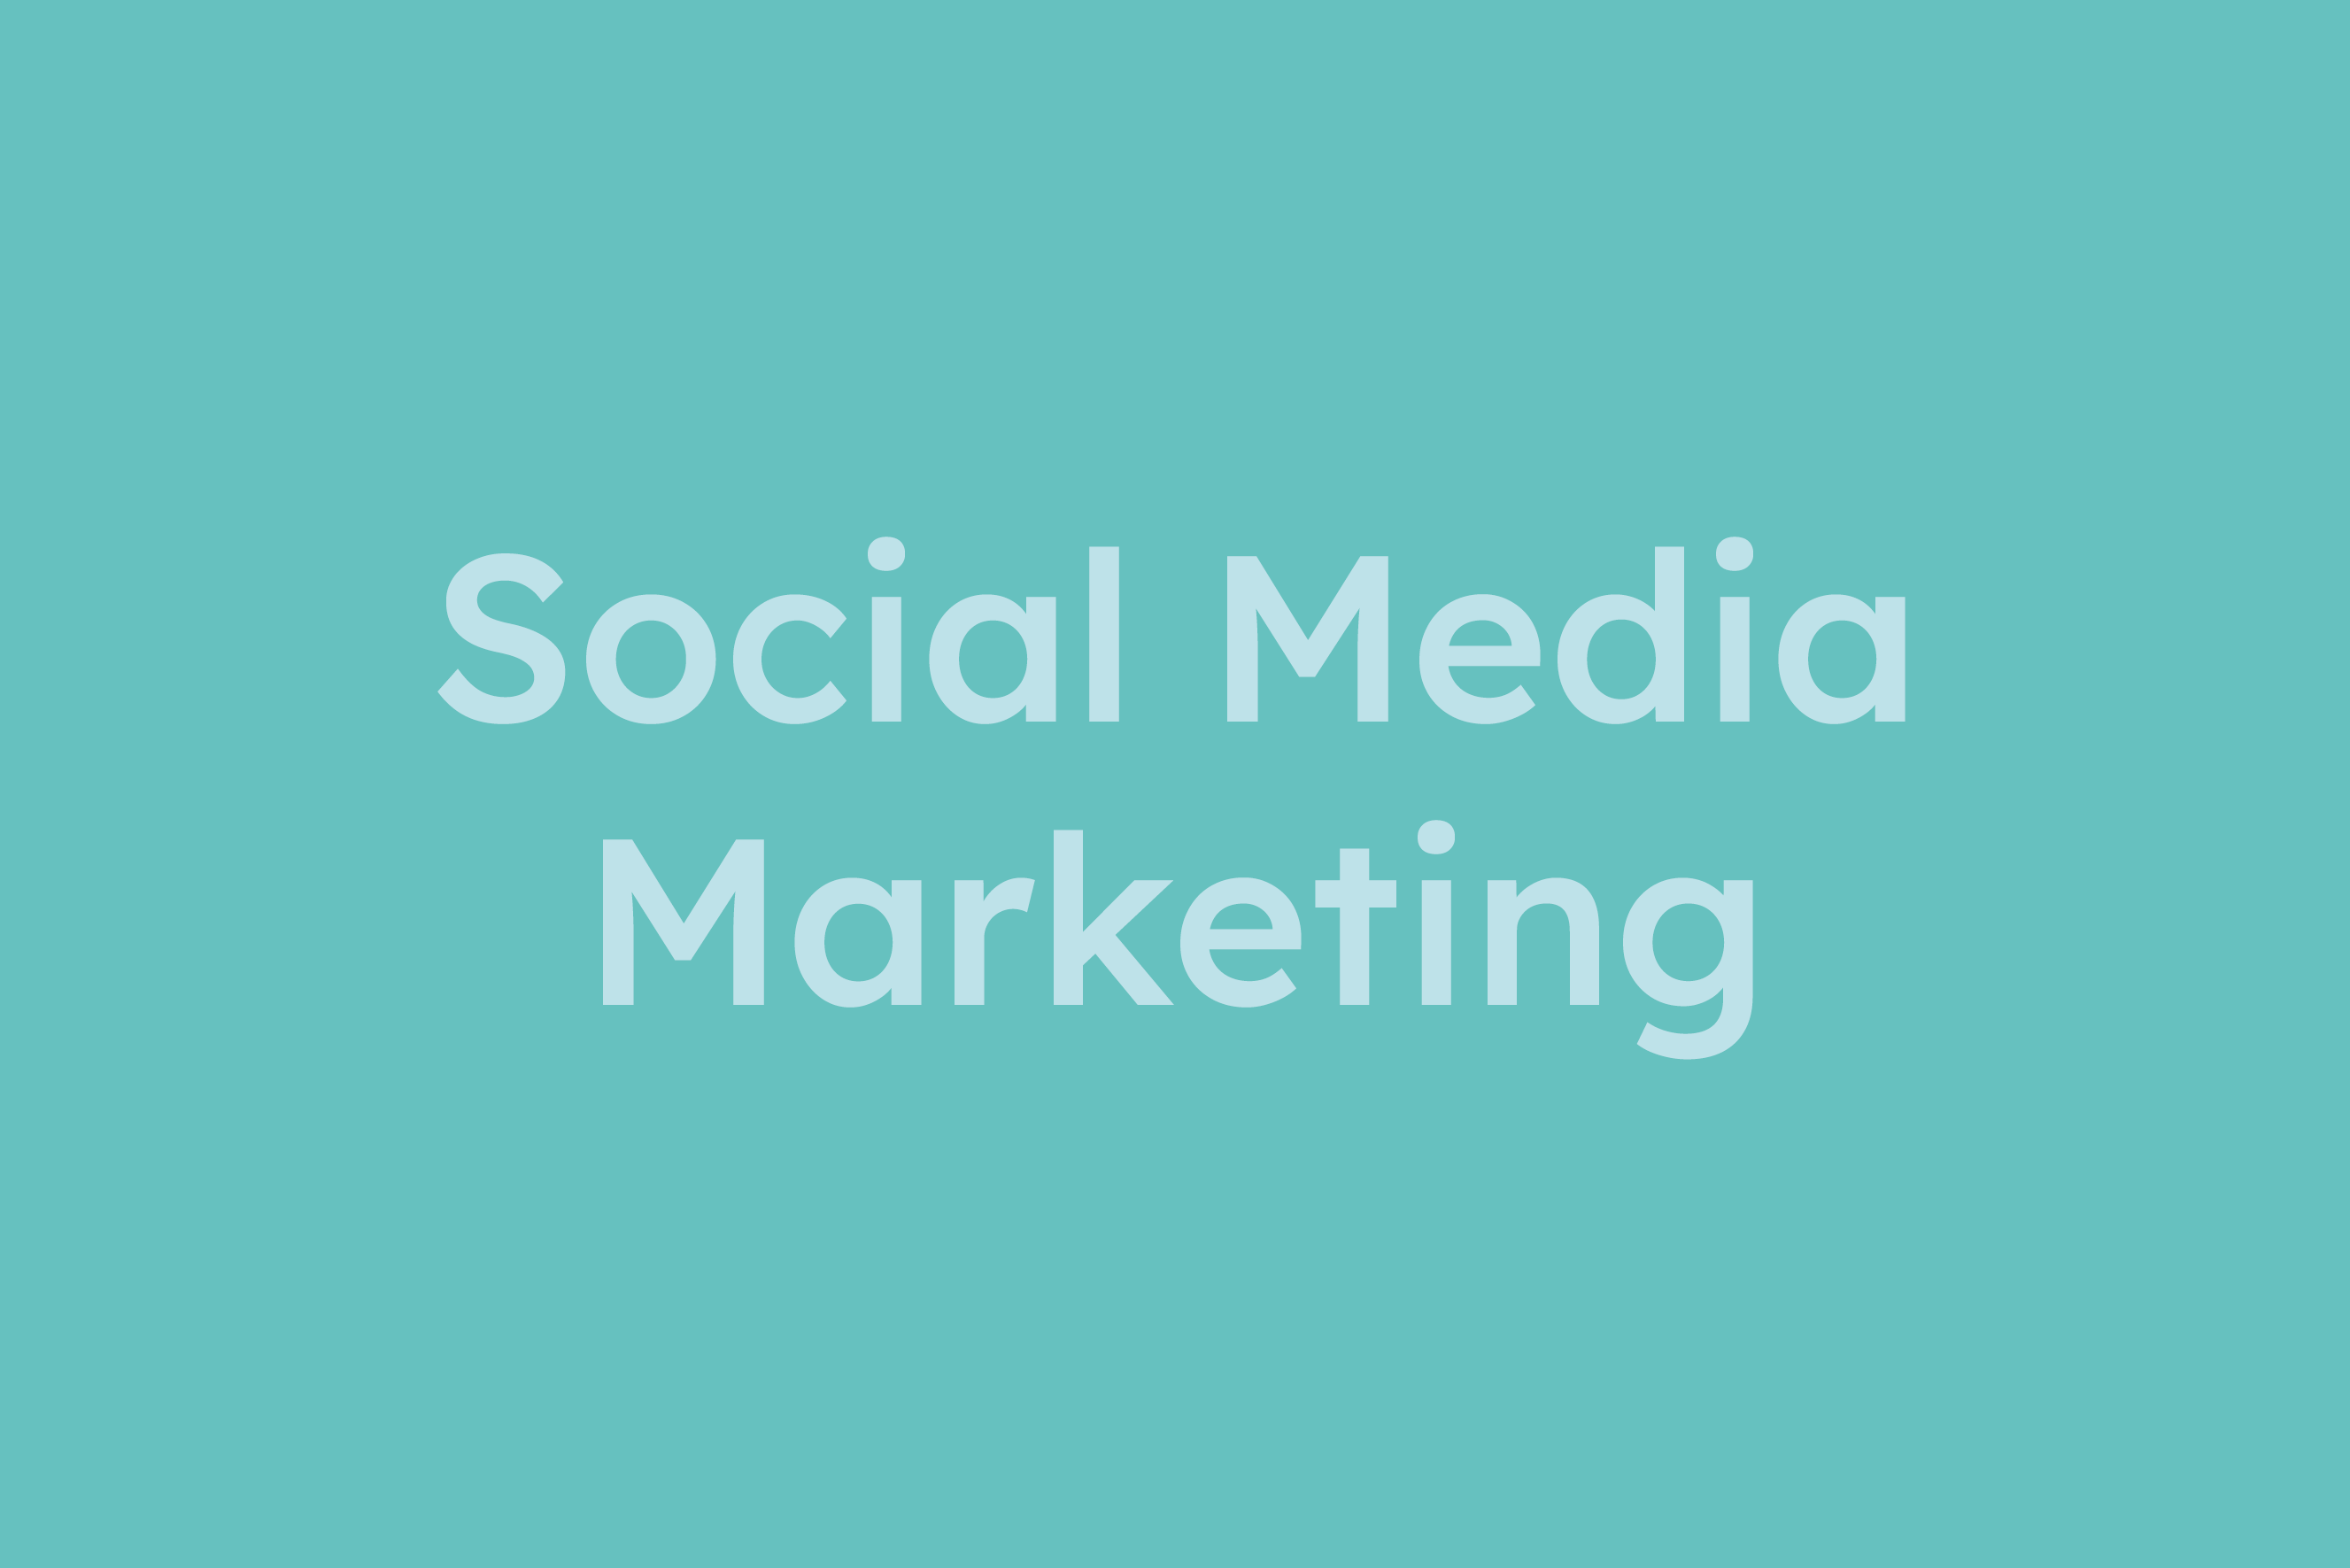 Social Media Marketing erklärt im Glossar von Campaign